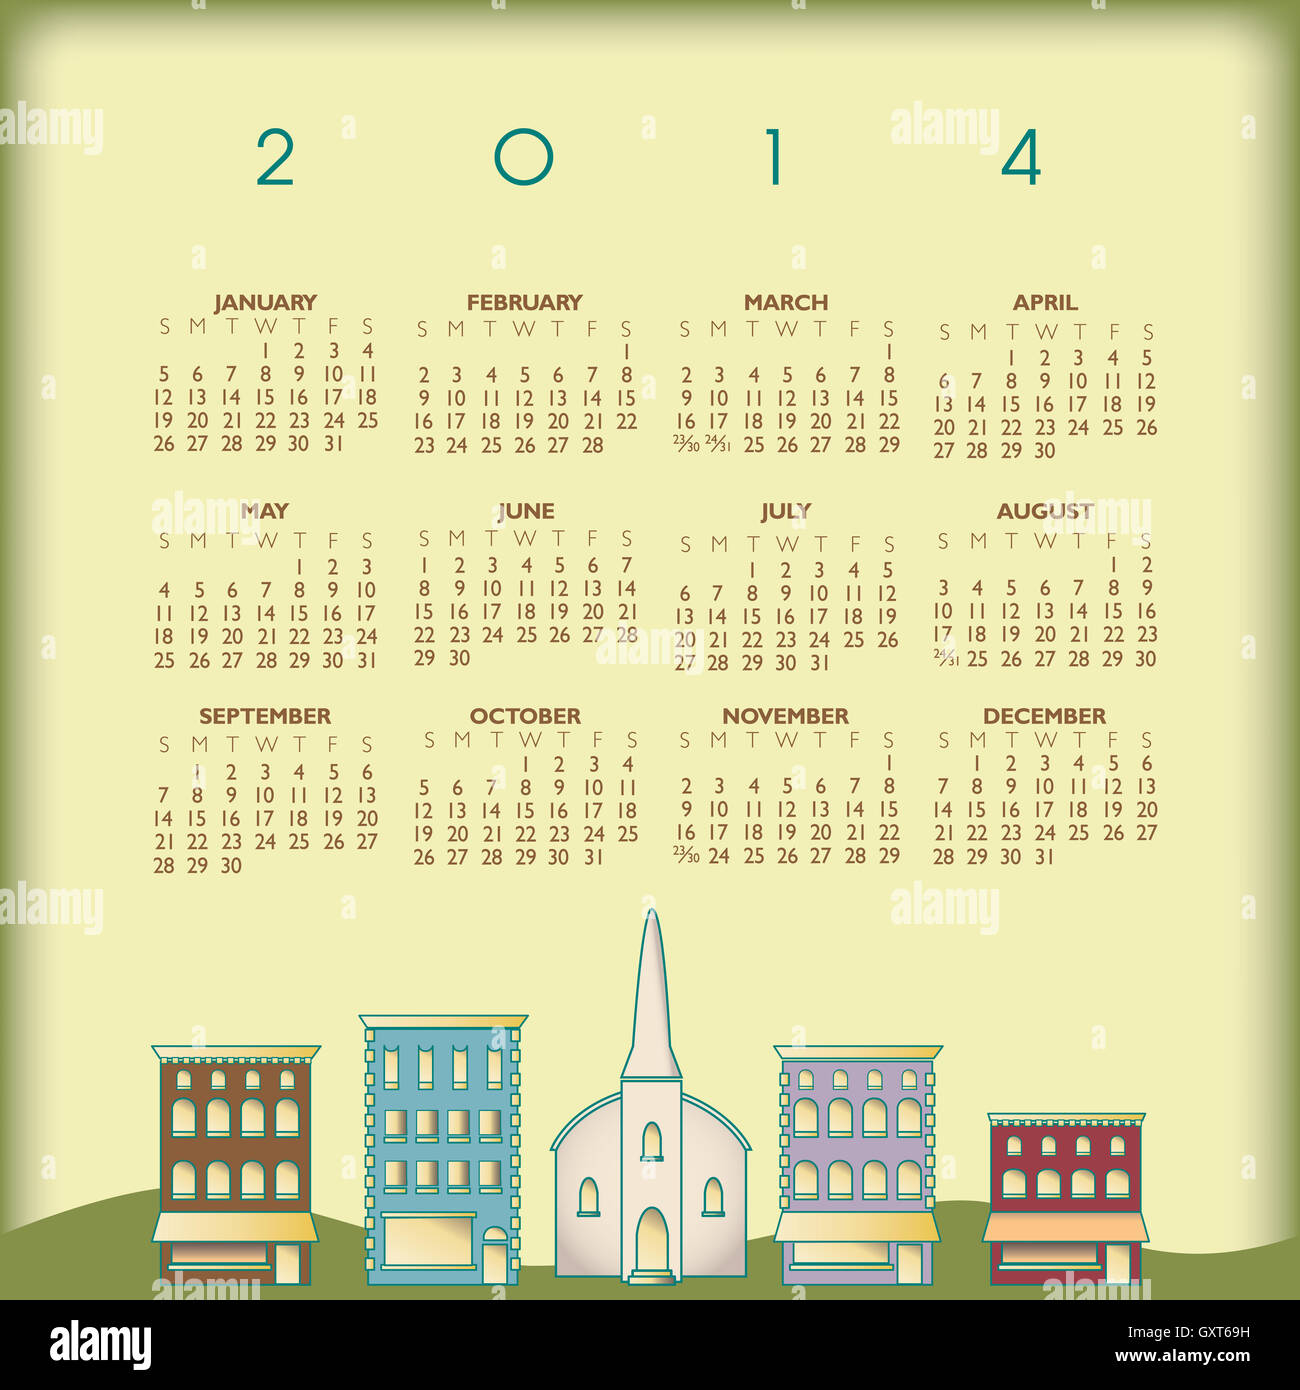 2014 Creative Small Town Calendar Stock Photo